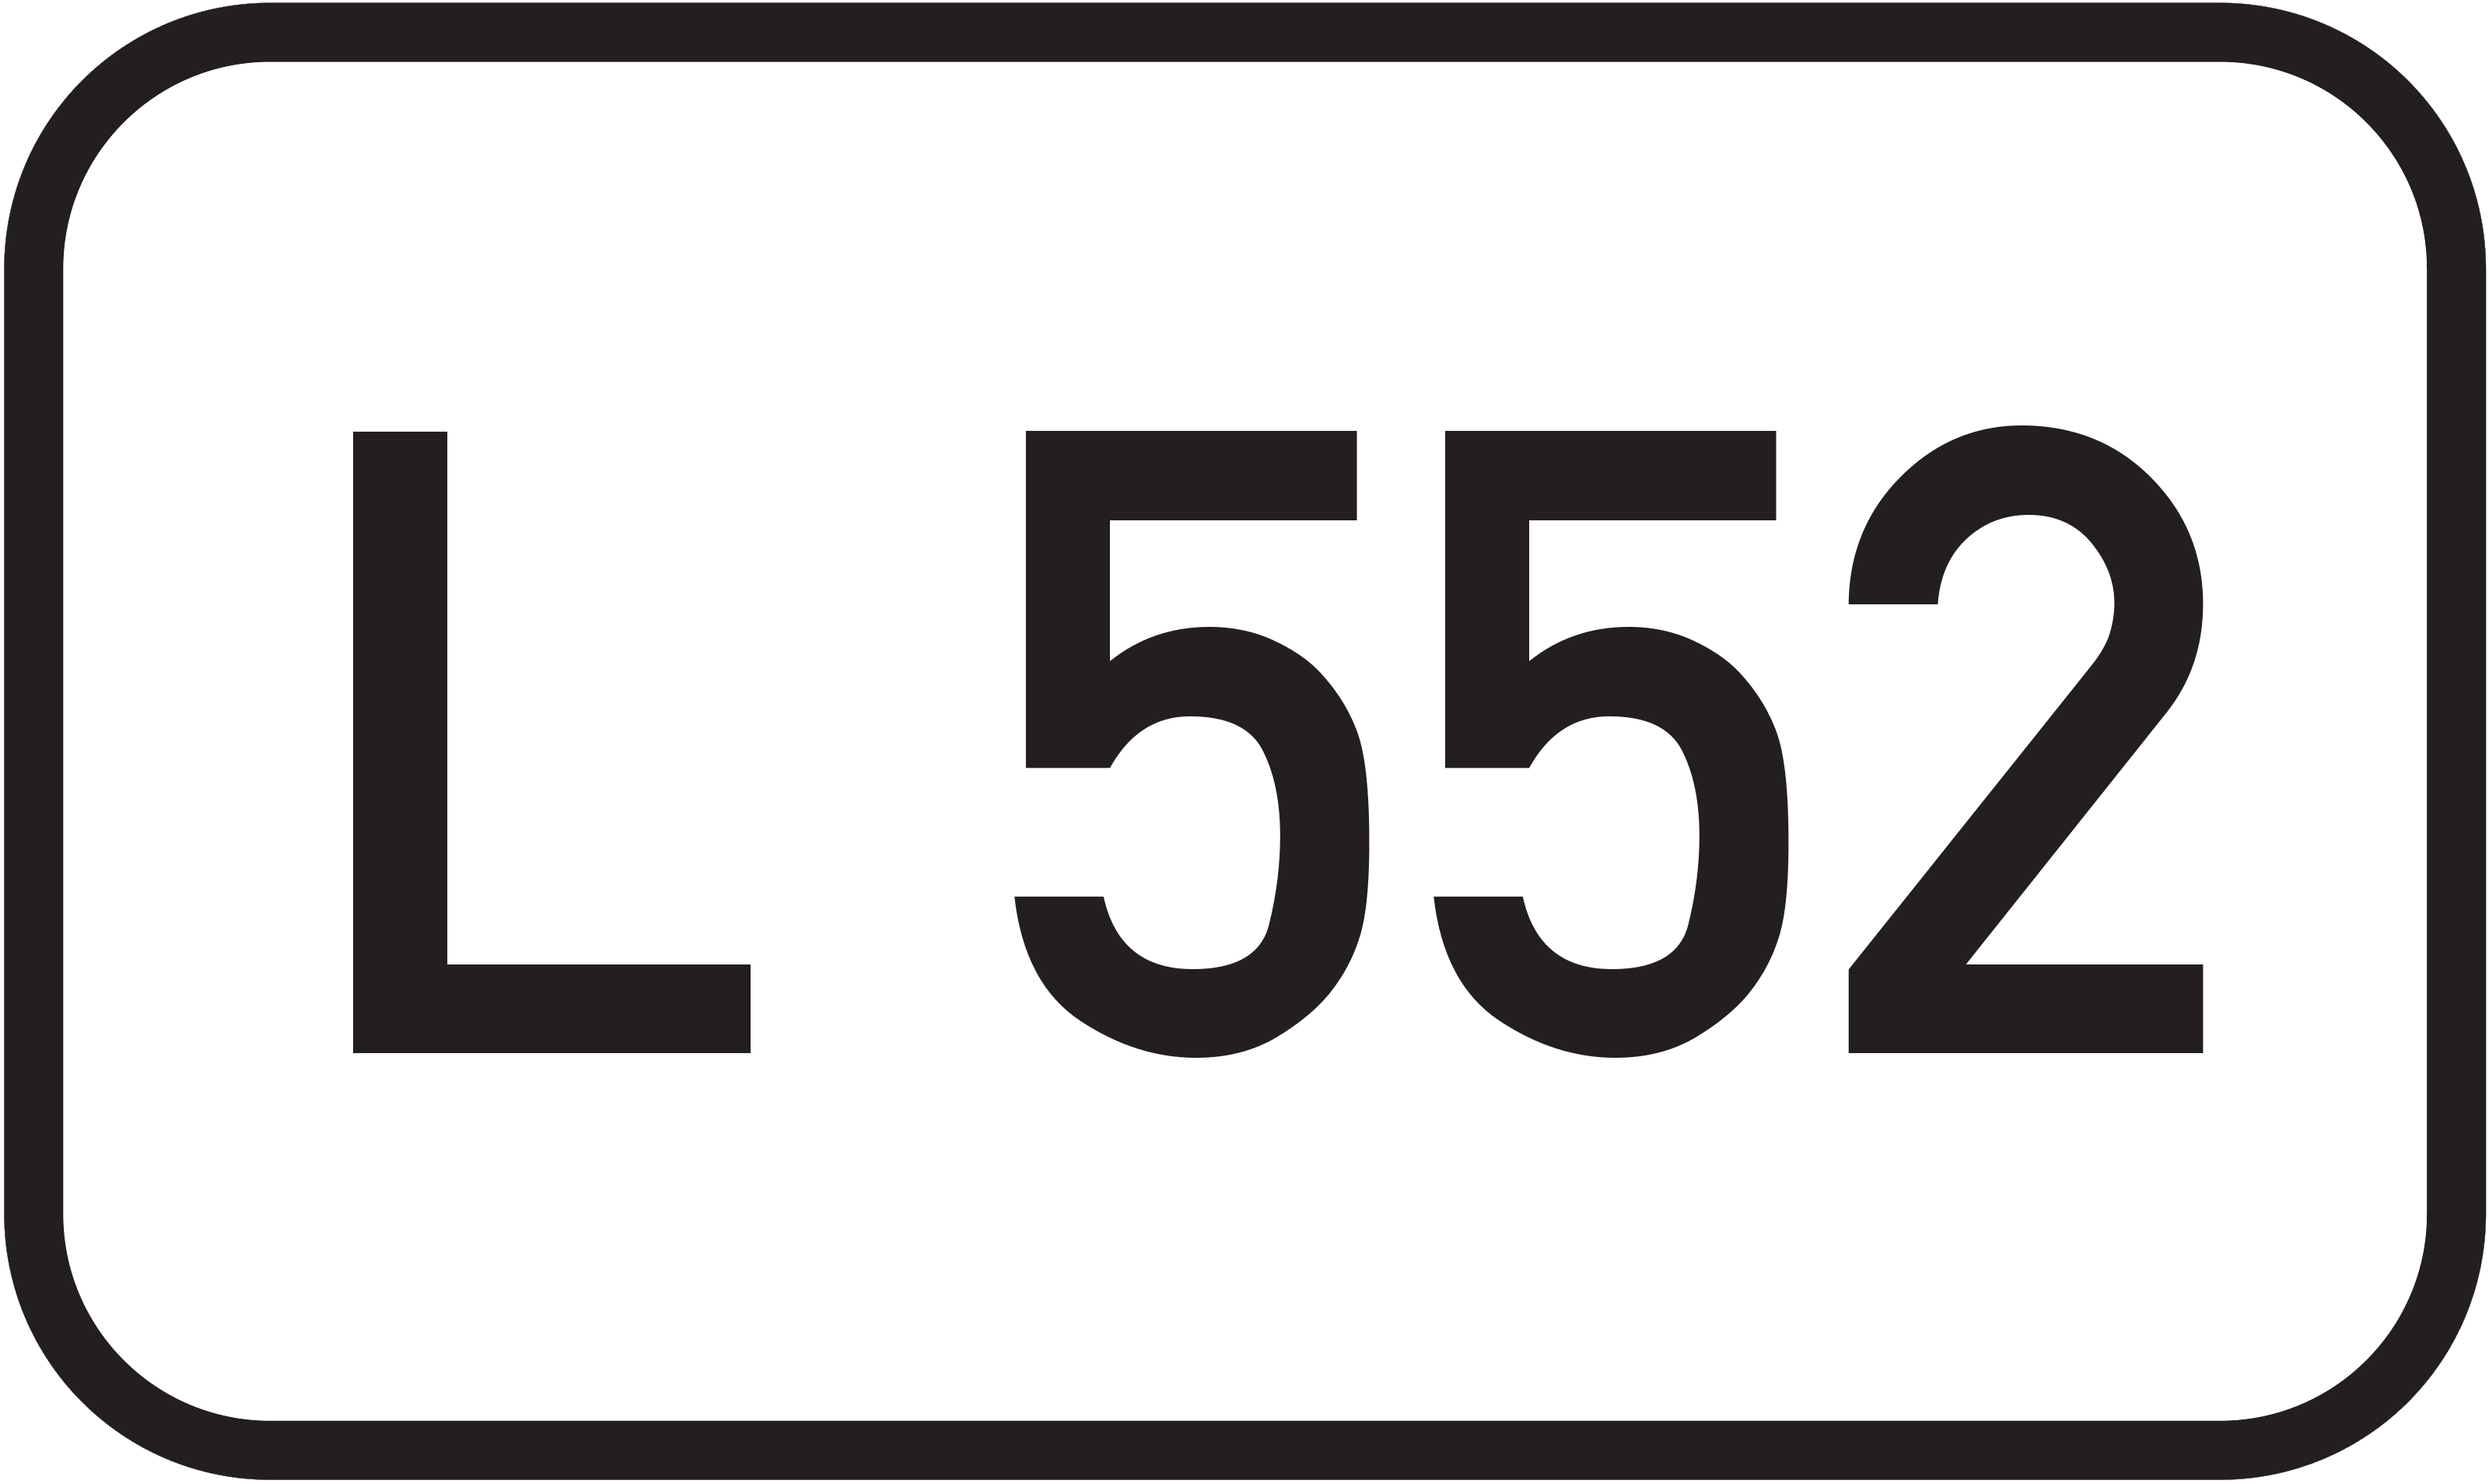 Landesstraße L 552